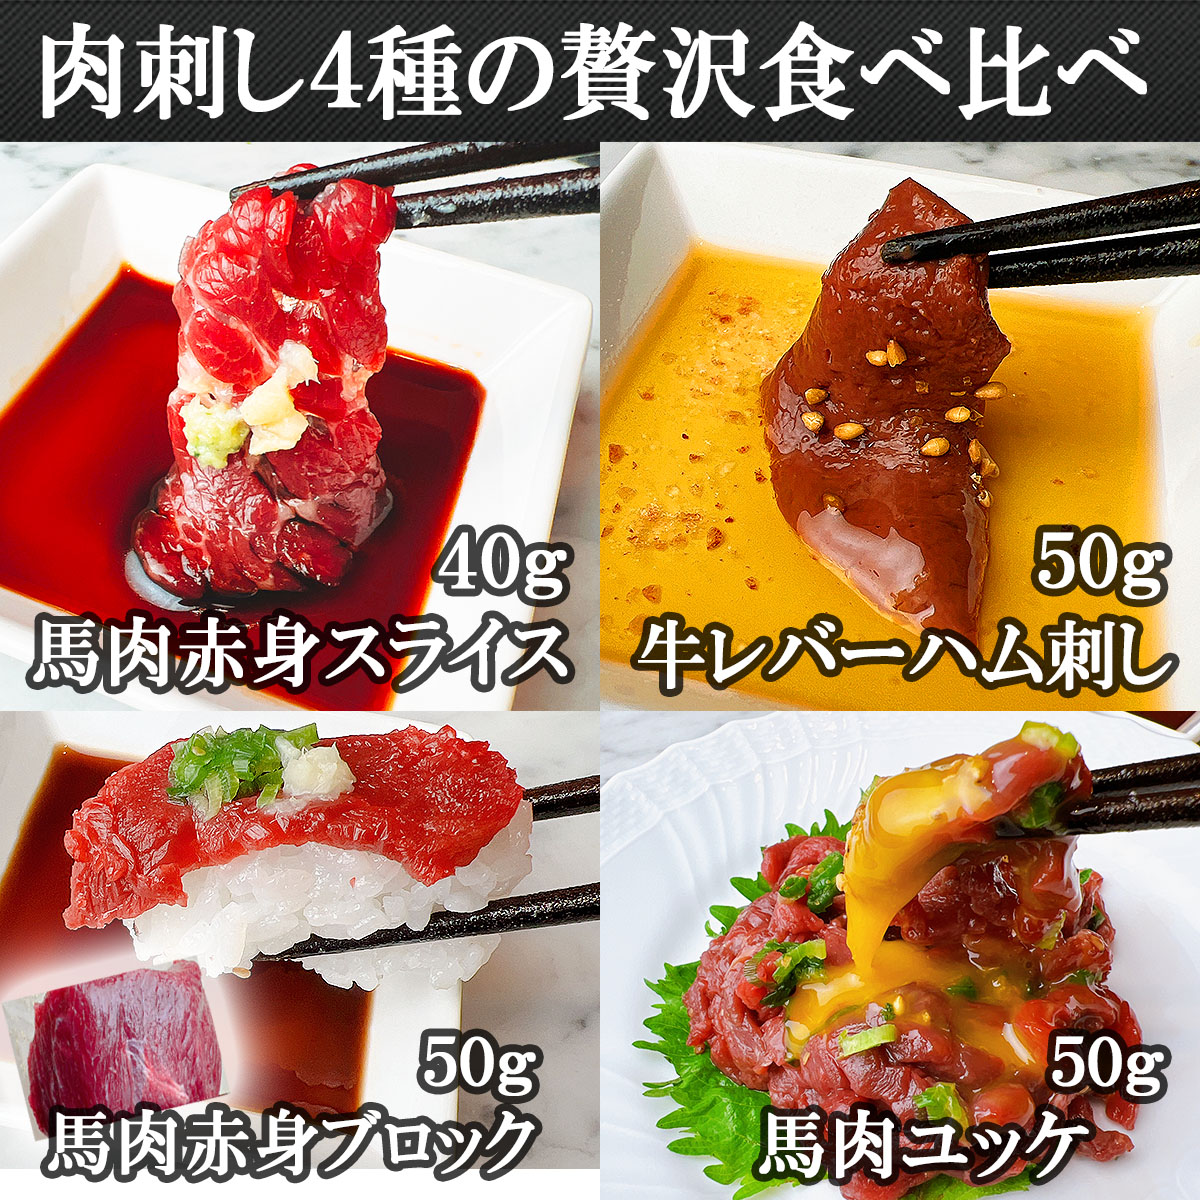 馬肉刺し赤身スライス、レバ刺し、牛レバーハム、肉寿司、桜ユッケ贅沢食べ比べ